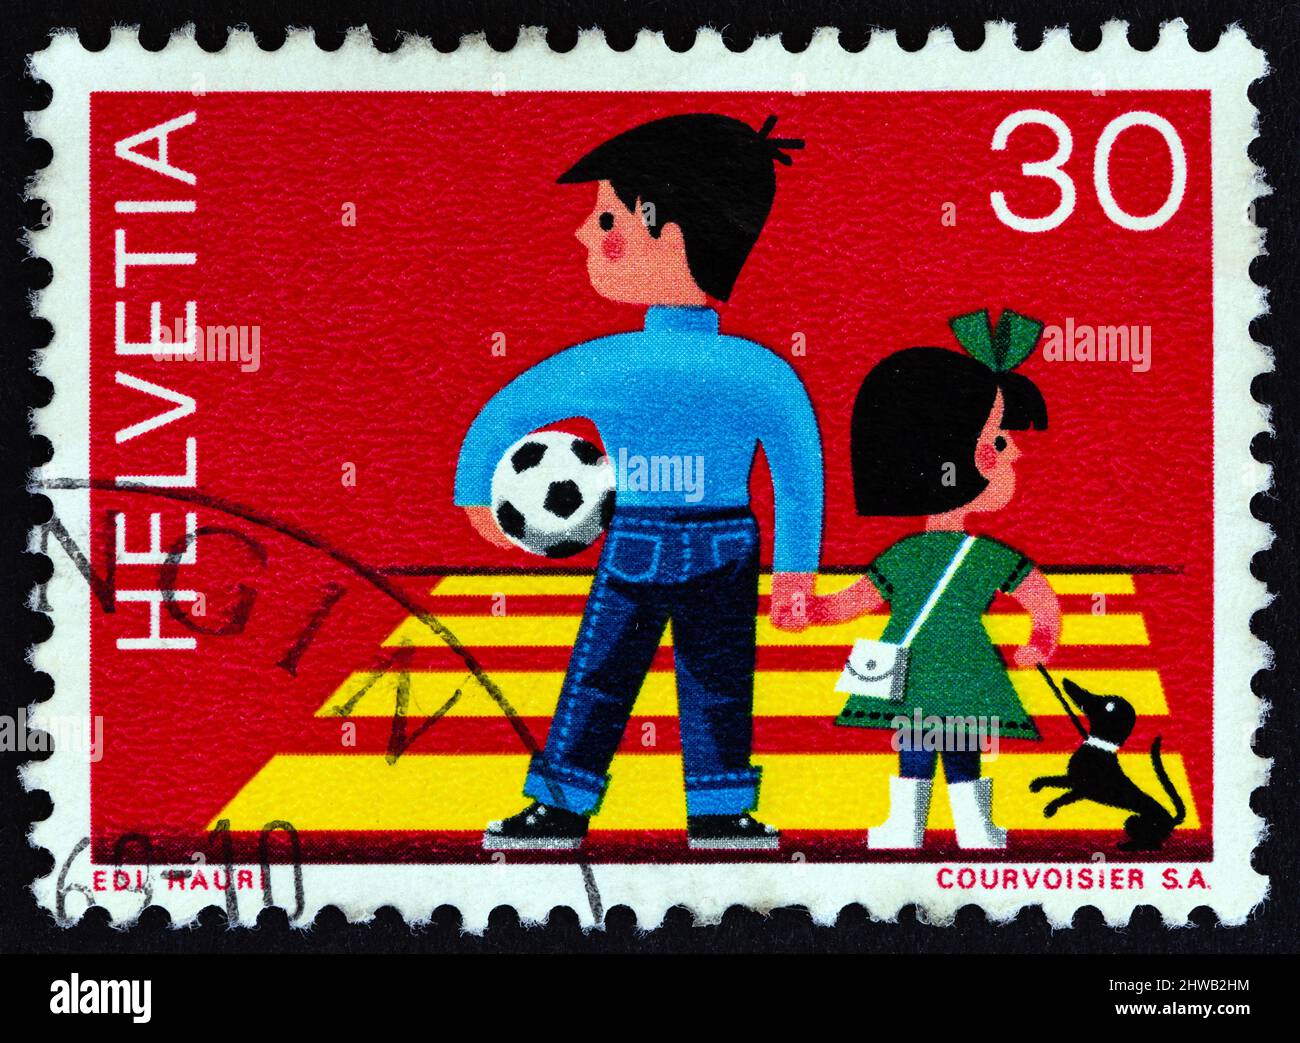 SVIZZERA - CIRCA 1969: Un francobollo stampato in Svizzera mostra i bambini che attraversano la strada, circa 1969. Foto Stock